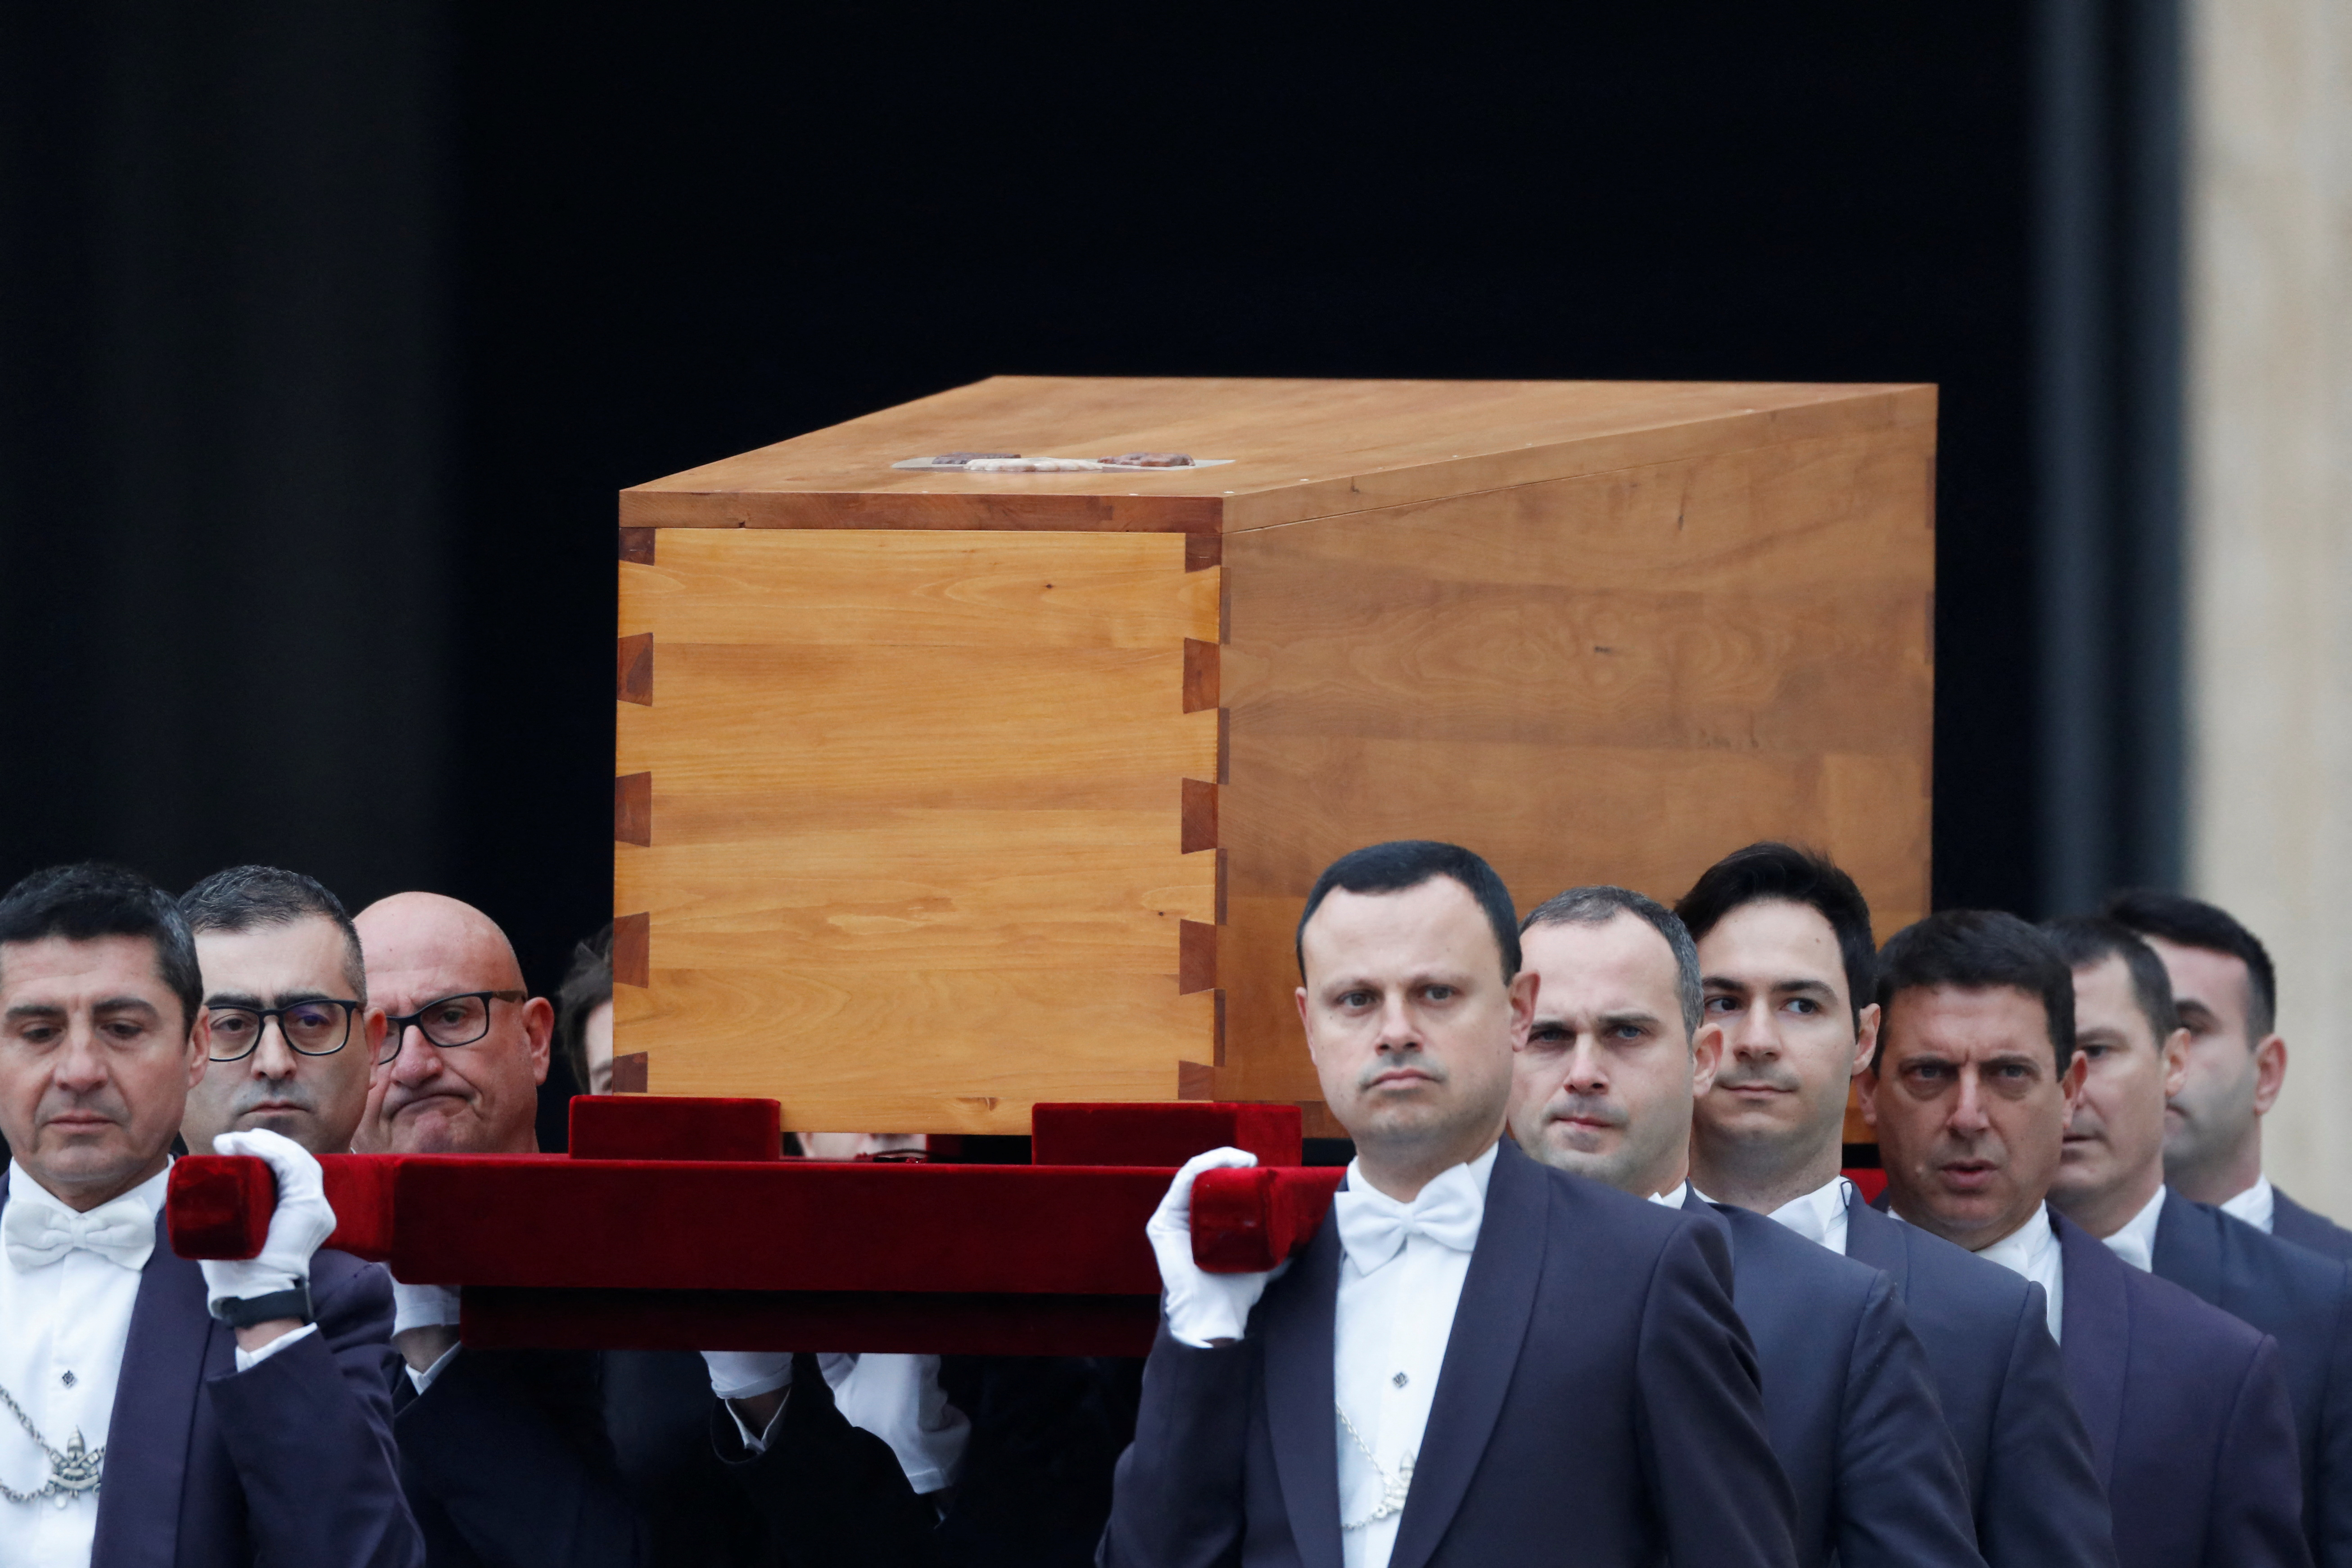 El ataúd del ex Papa Benedicto XVI es llevado al lugar designado para el comienzo de su funeral, en la Plaza de San Pedro en el Vaticano.